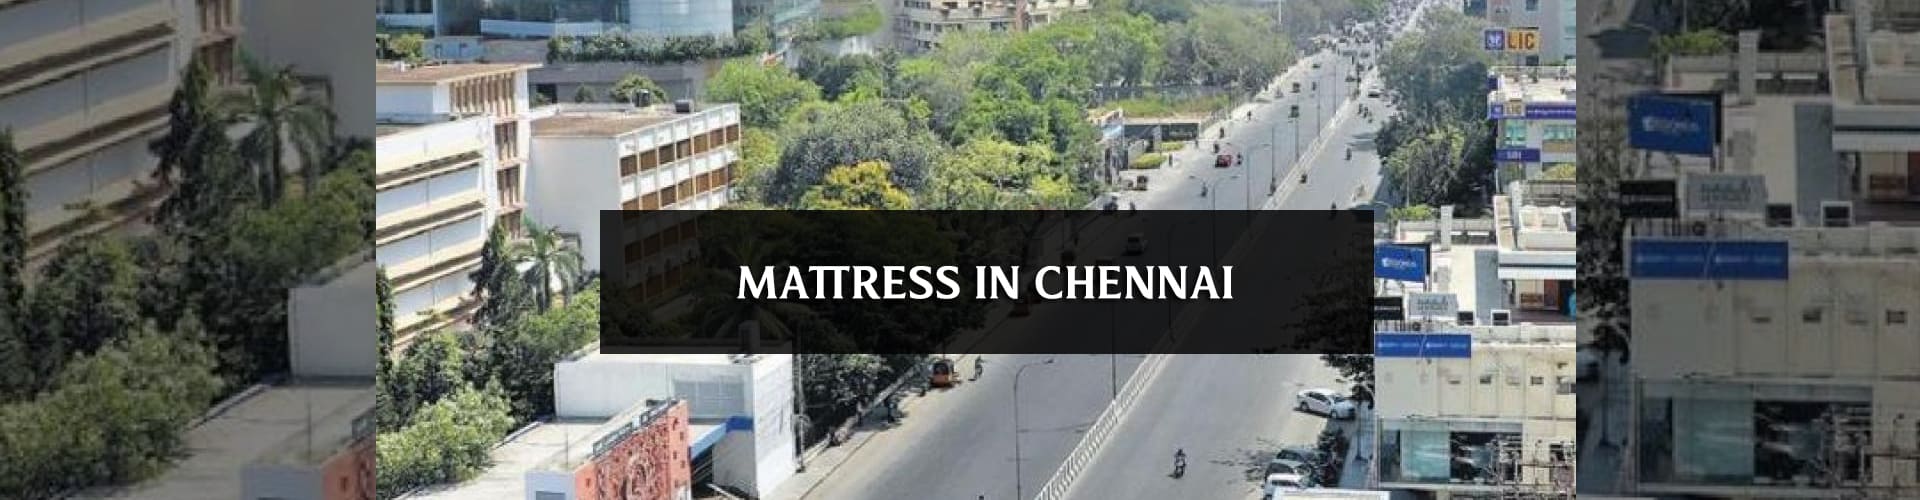 Buy mattresses online in chennai